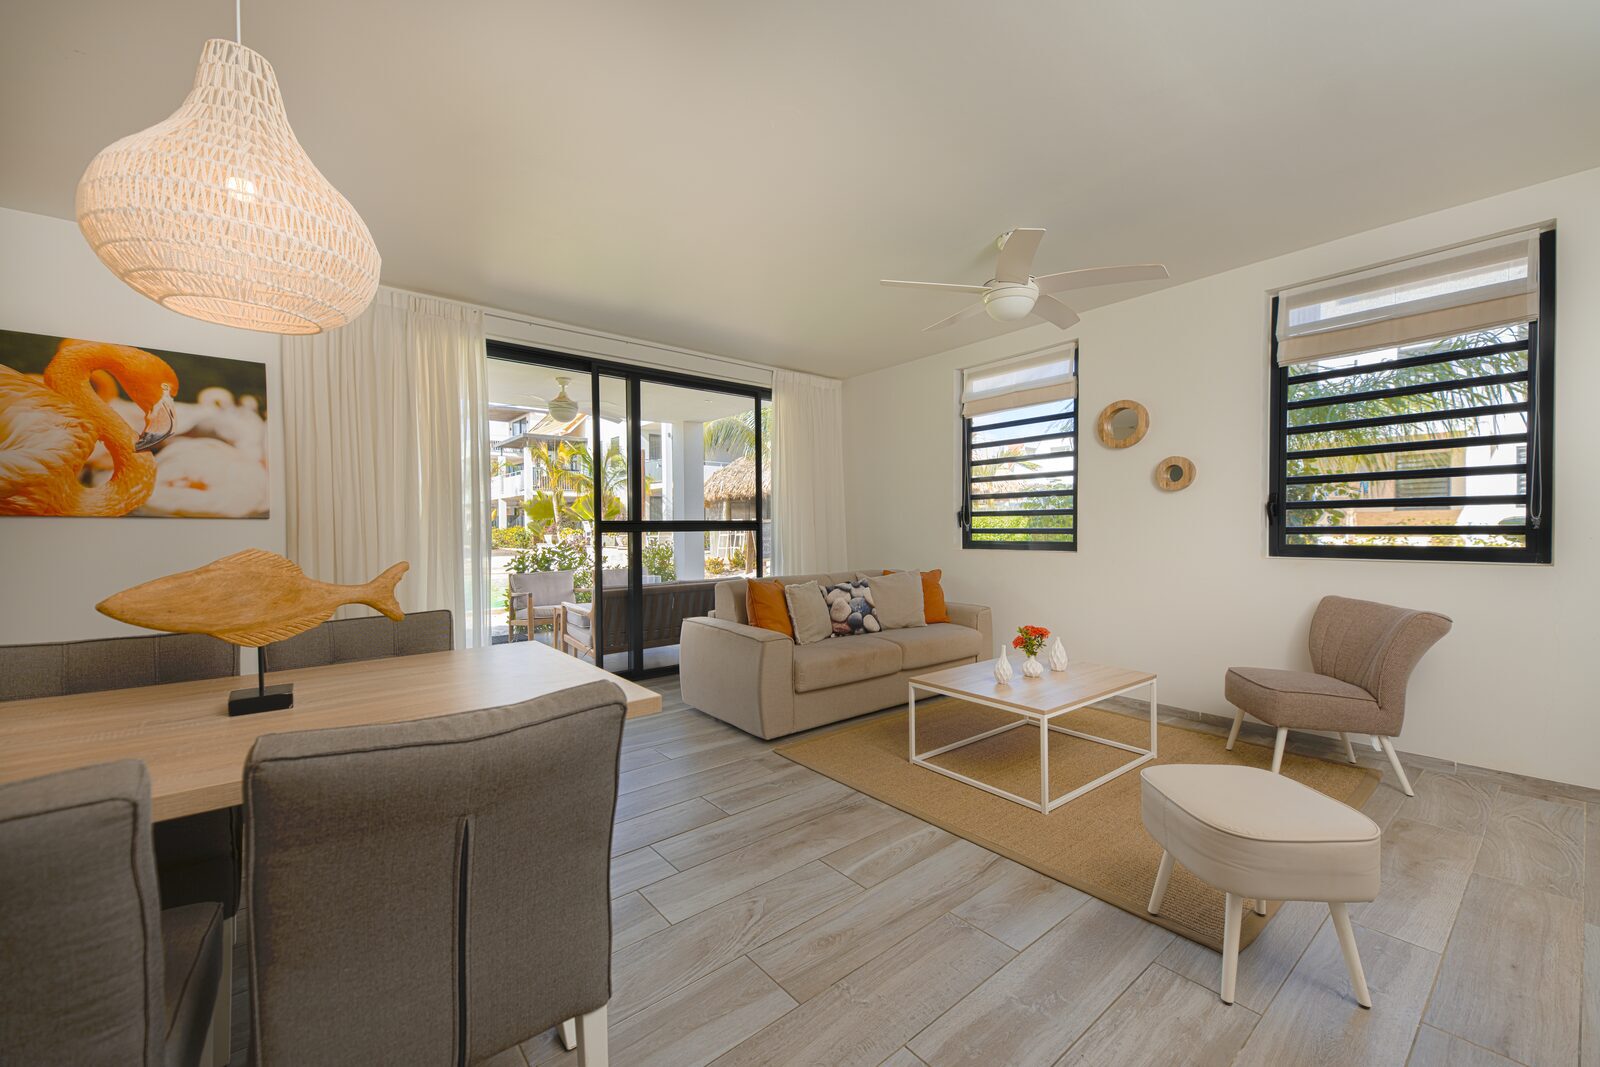 Op zoek naar een appartement op Bonaire? Bekijk dan hier de beschikbare accomodaties op ons resort.